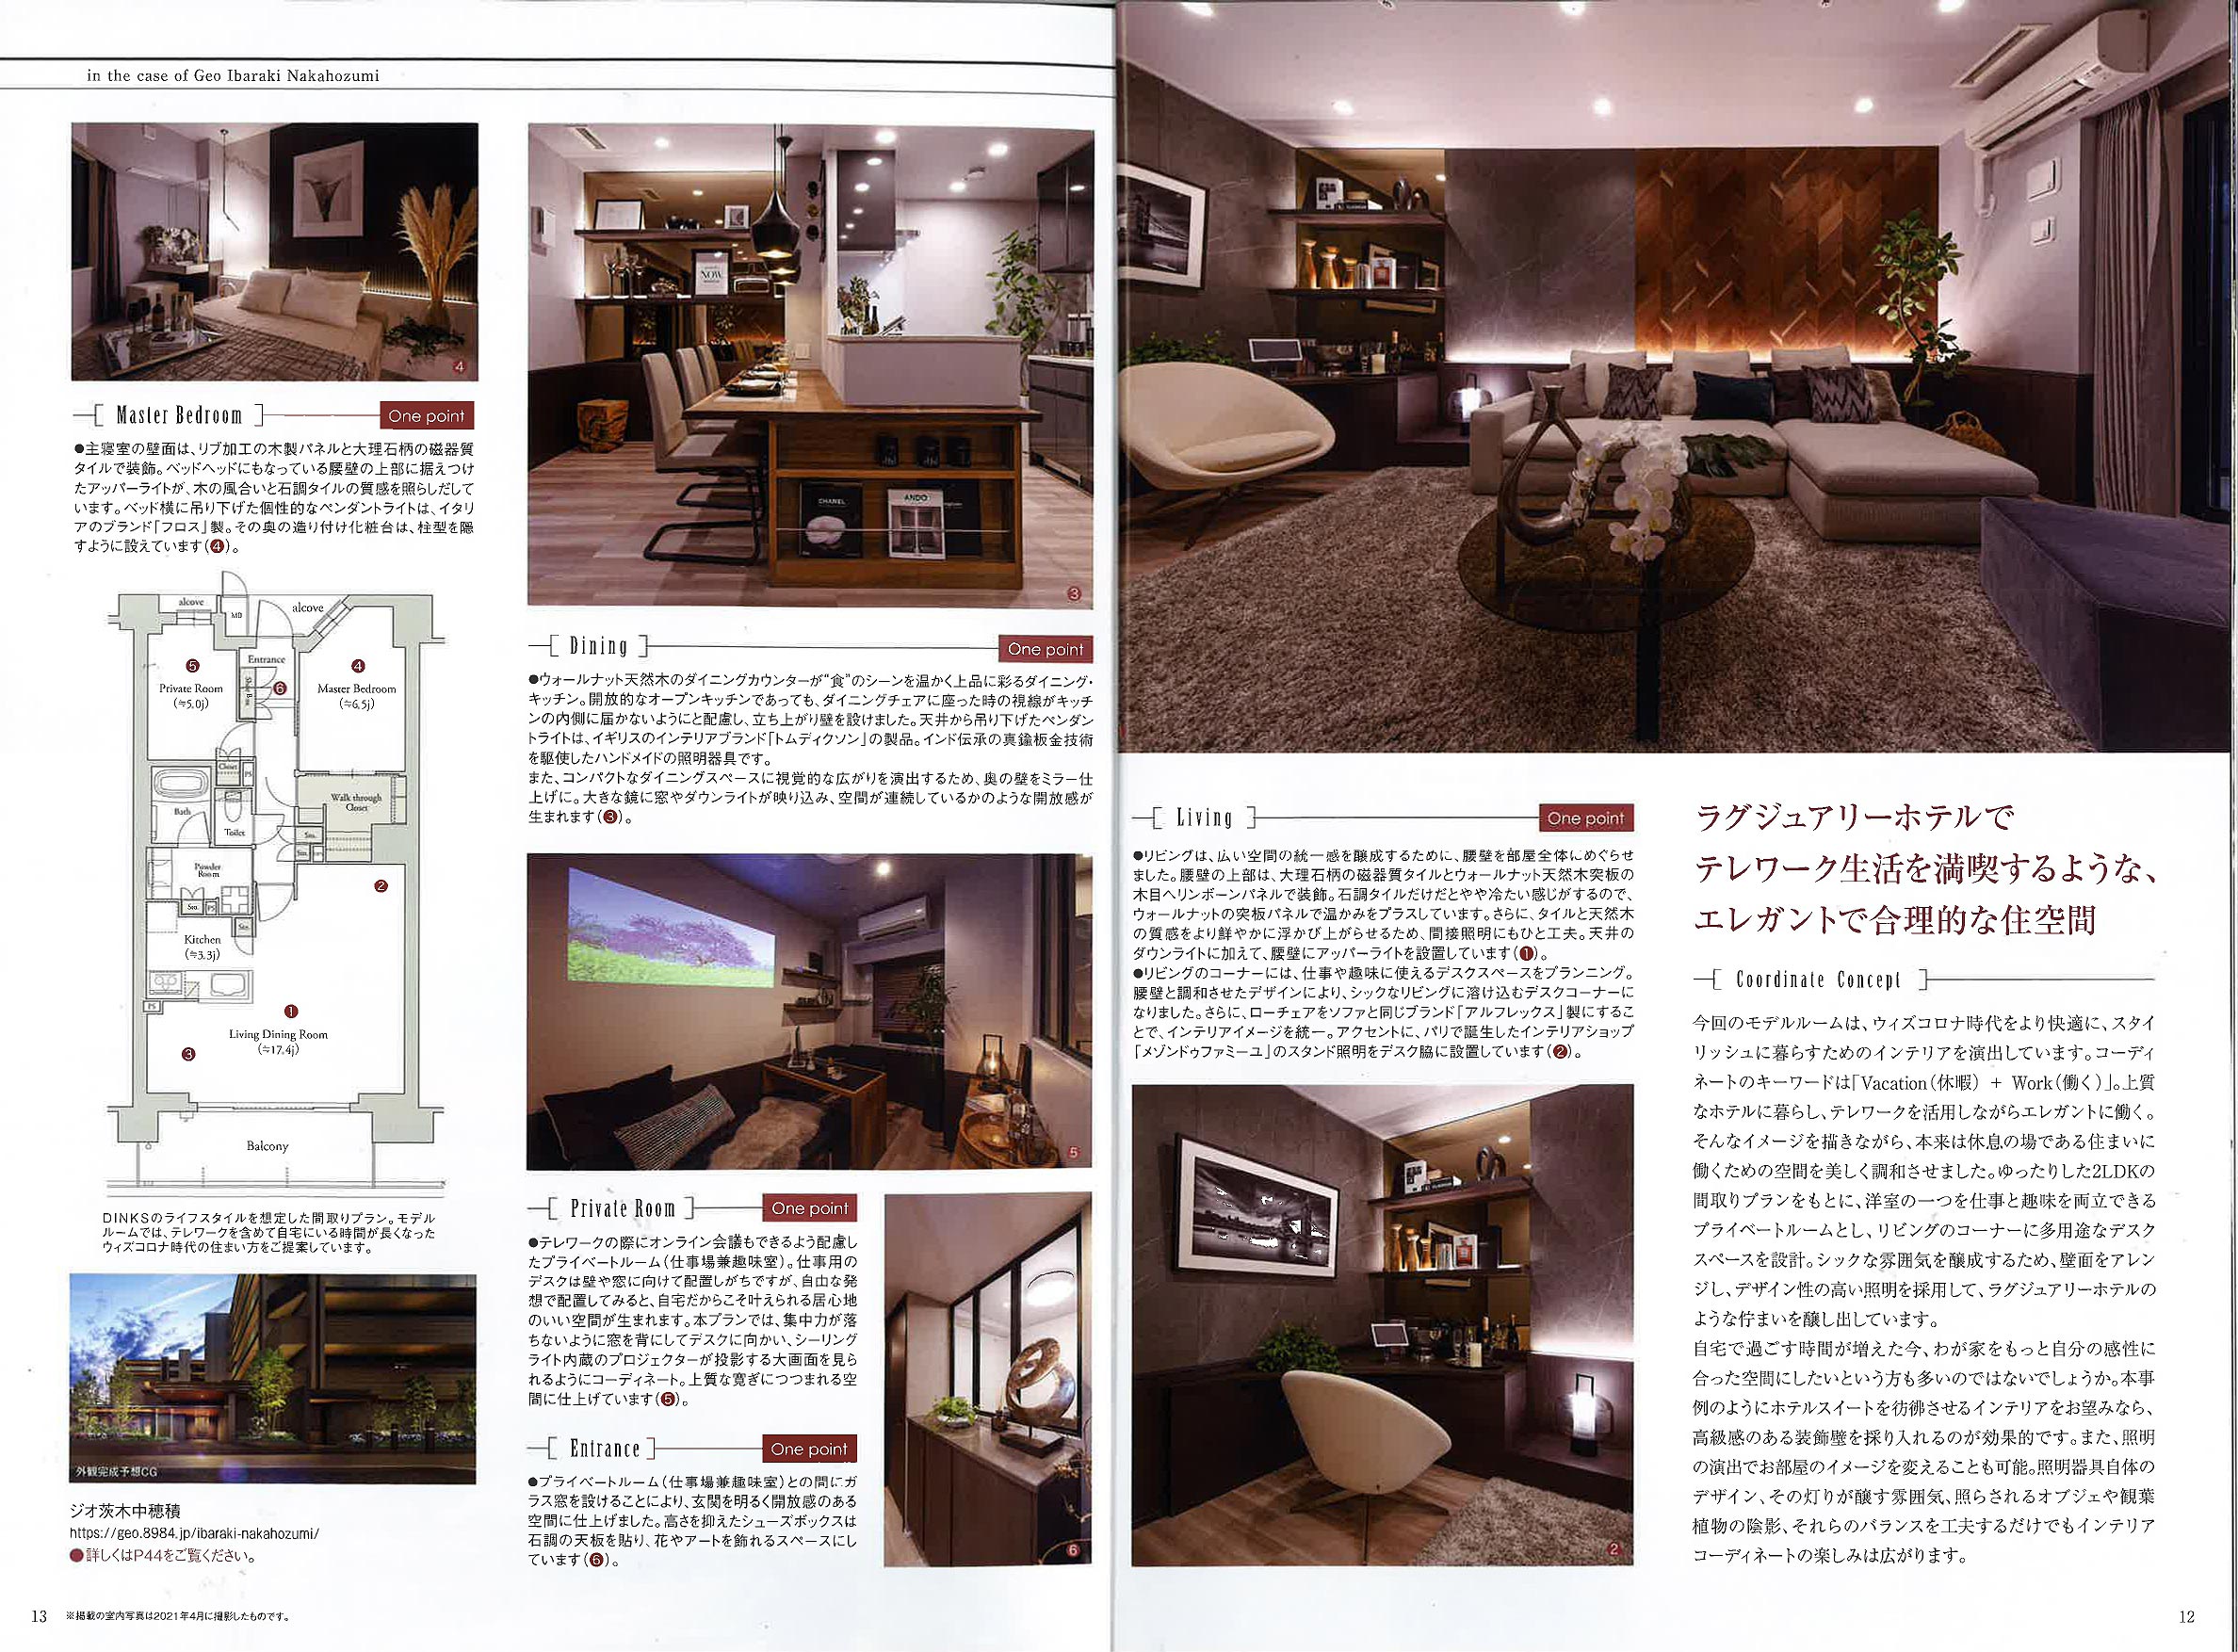 阪急阪神不動産様の企業誌（彩-SAI）の「Designer's eye」に、弊社モデルルーム（ジオ茨木中穂積）が掲載されました。